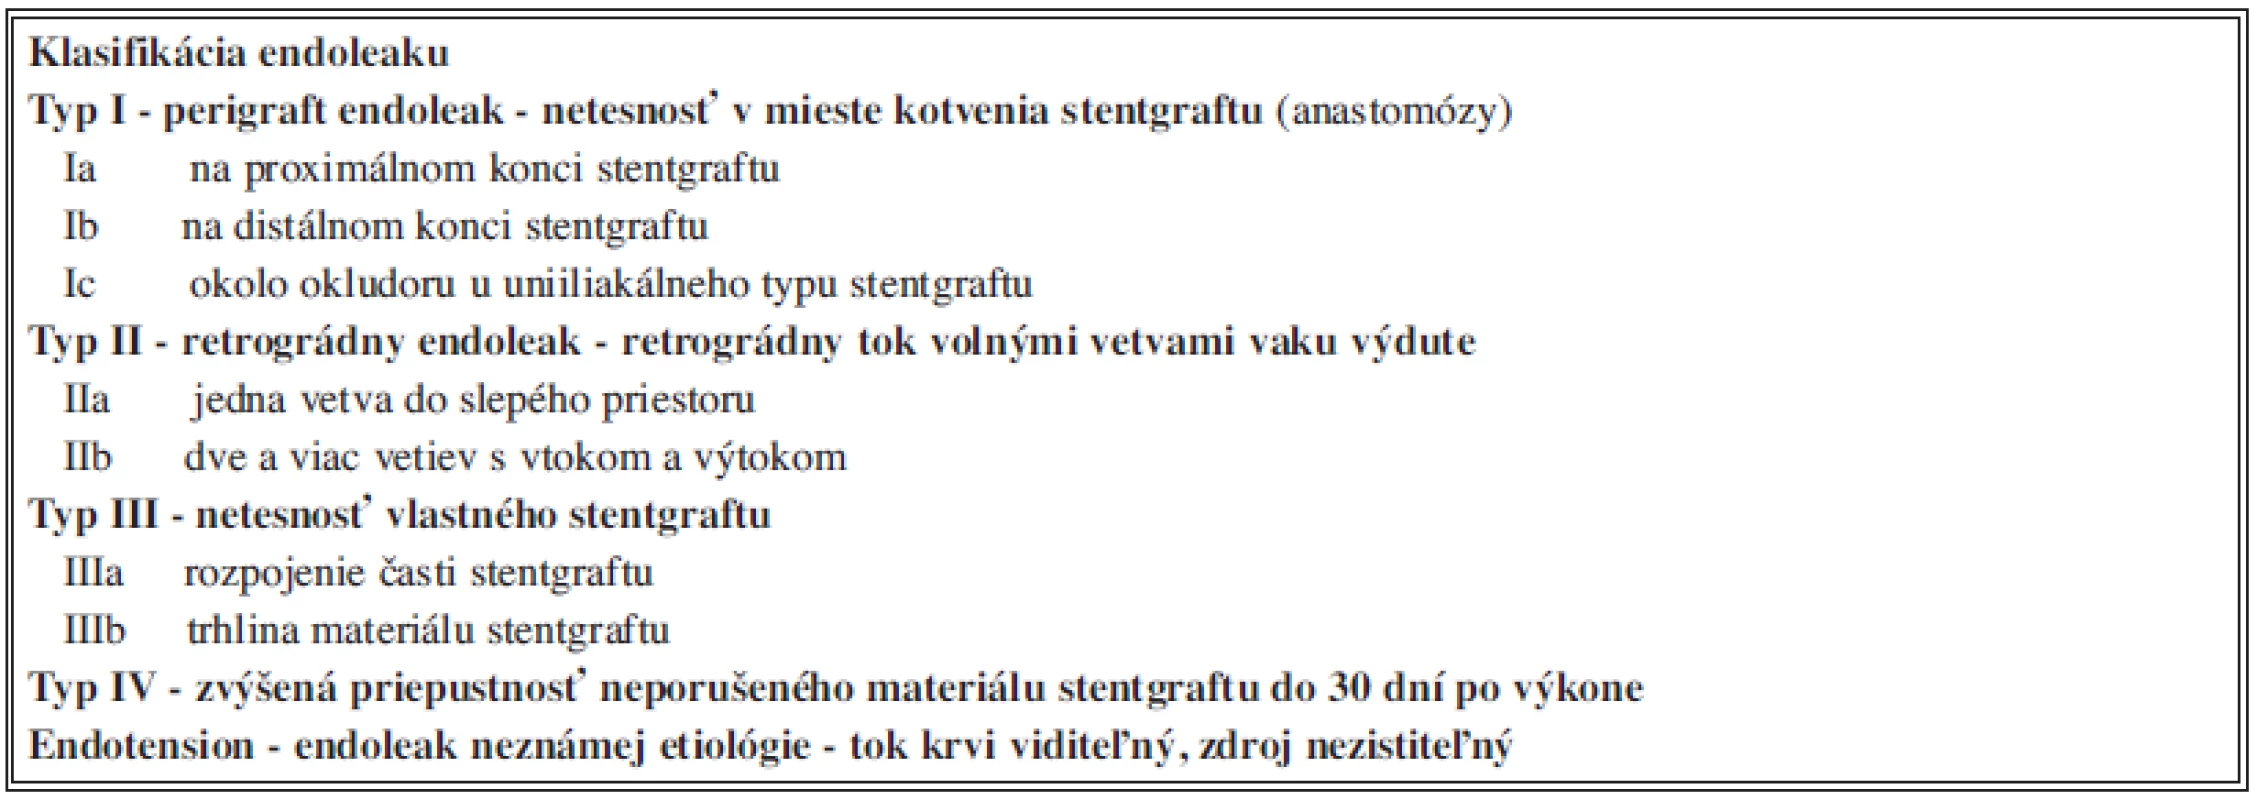 Klasifikácia endoleaku podľa príčiny a miesta vzniku
Tab. 4: Endoleak classification according to etiology and origin